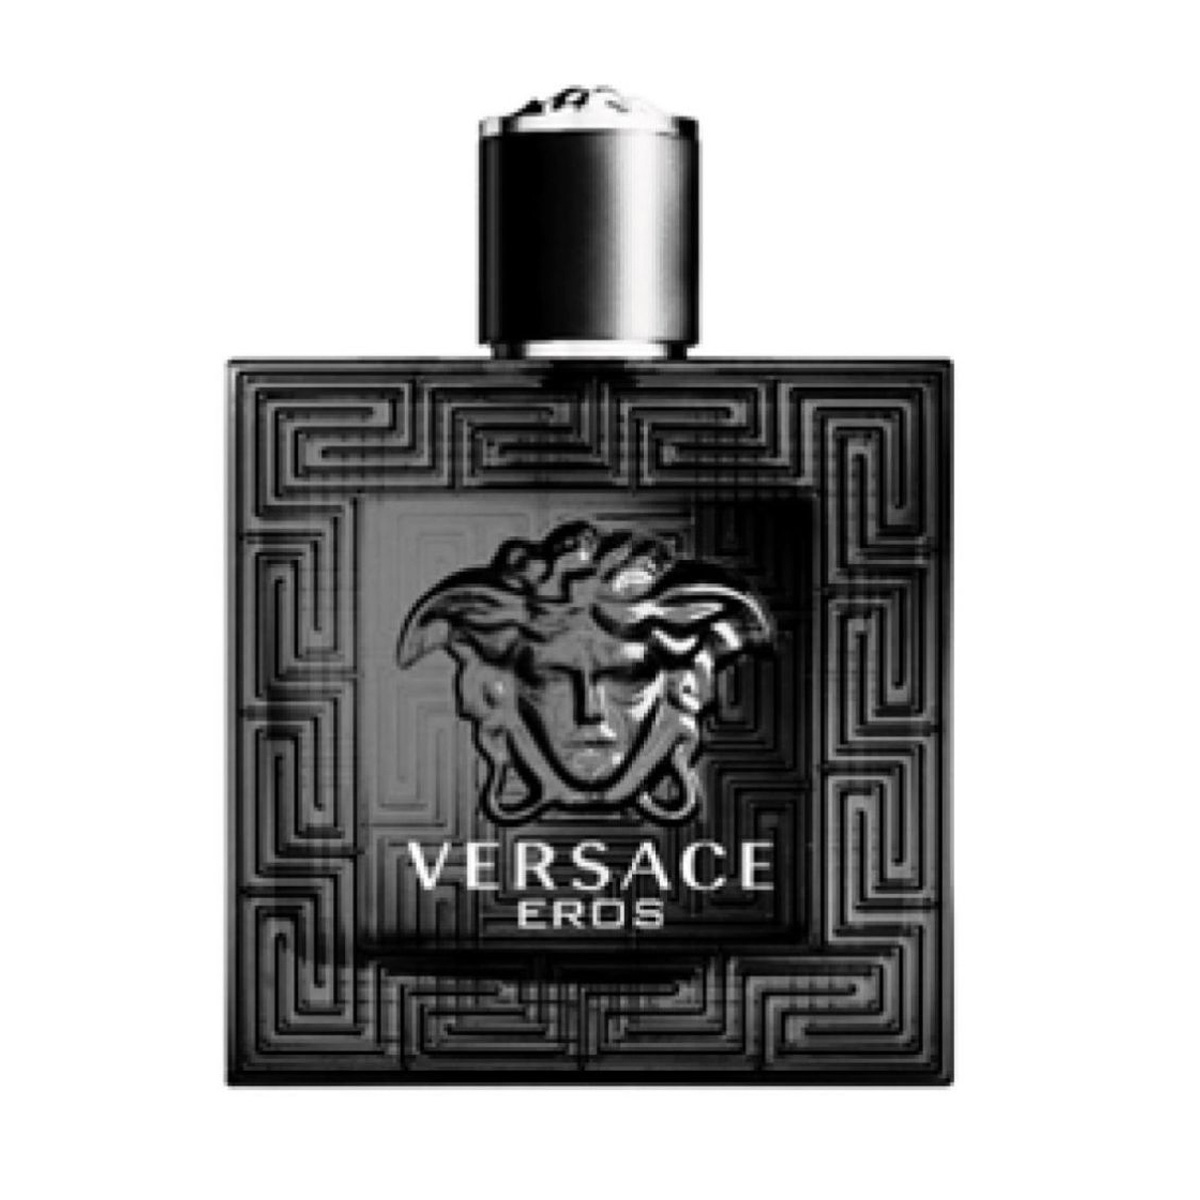 versace eros black friday, OFF 71%,Buy!